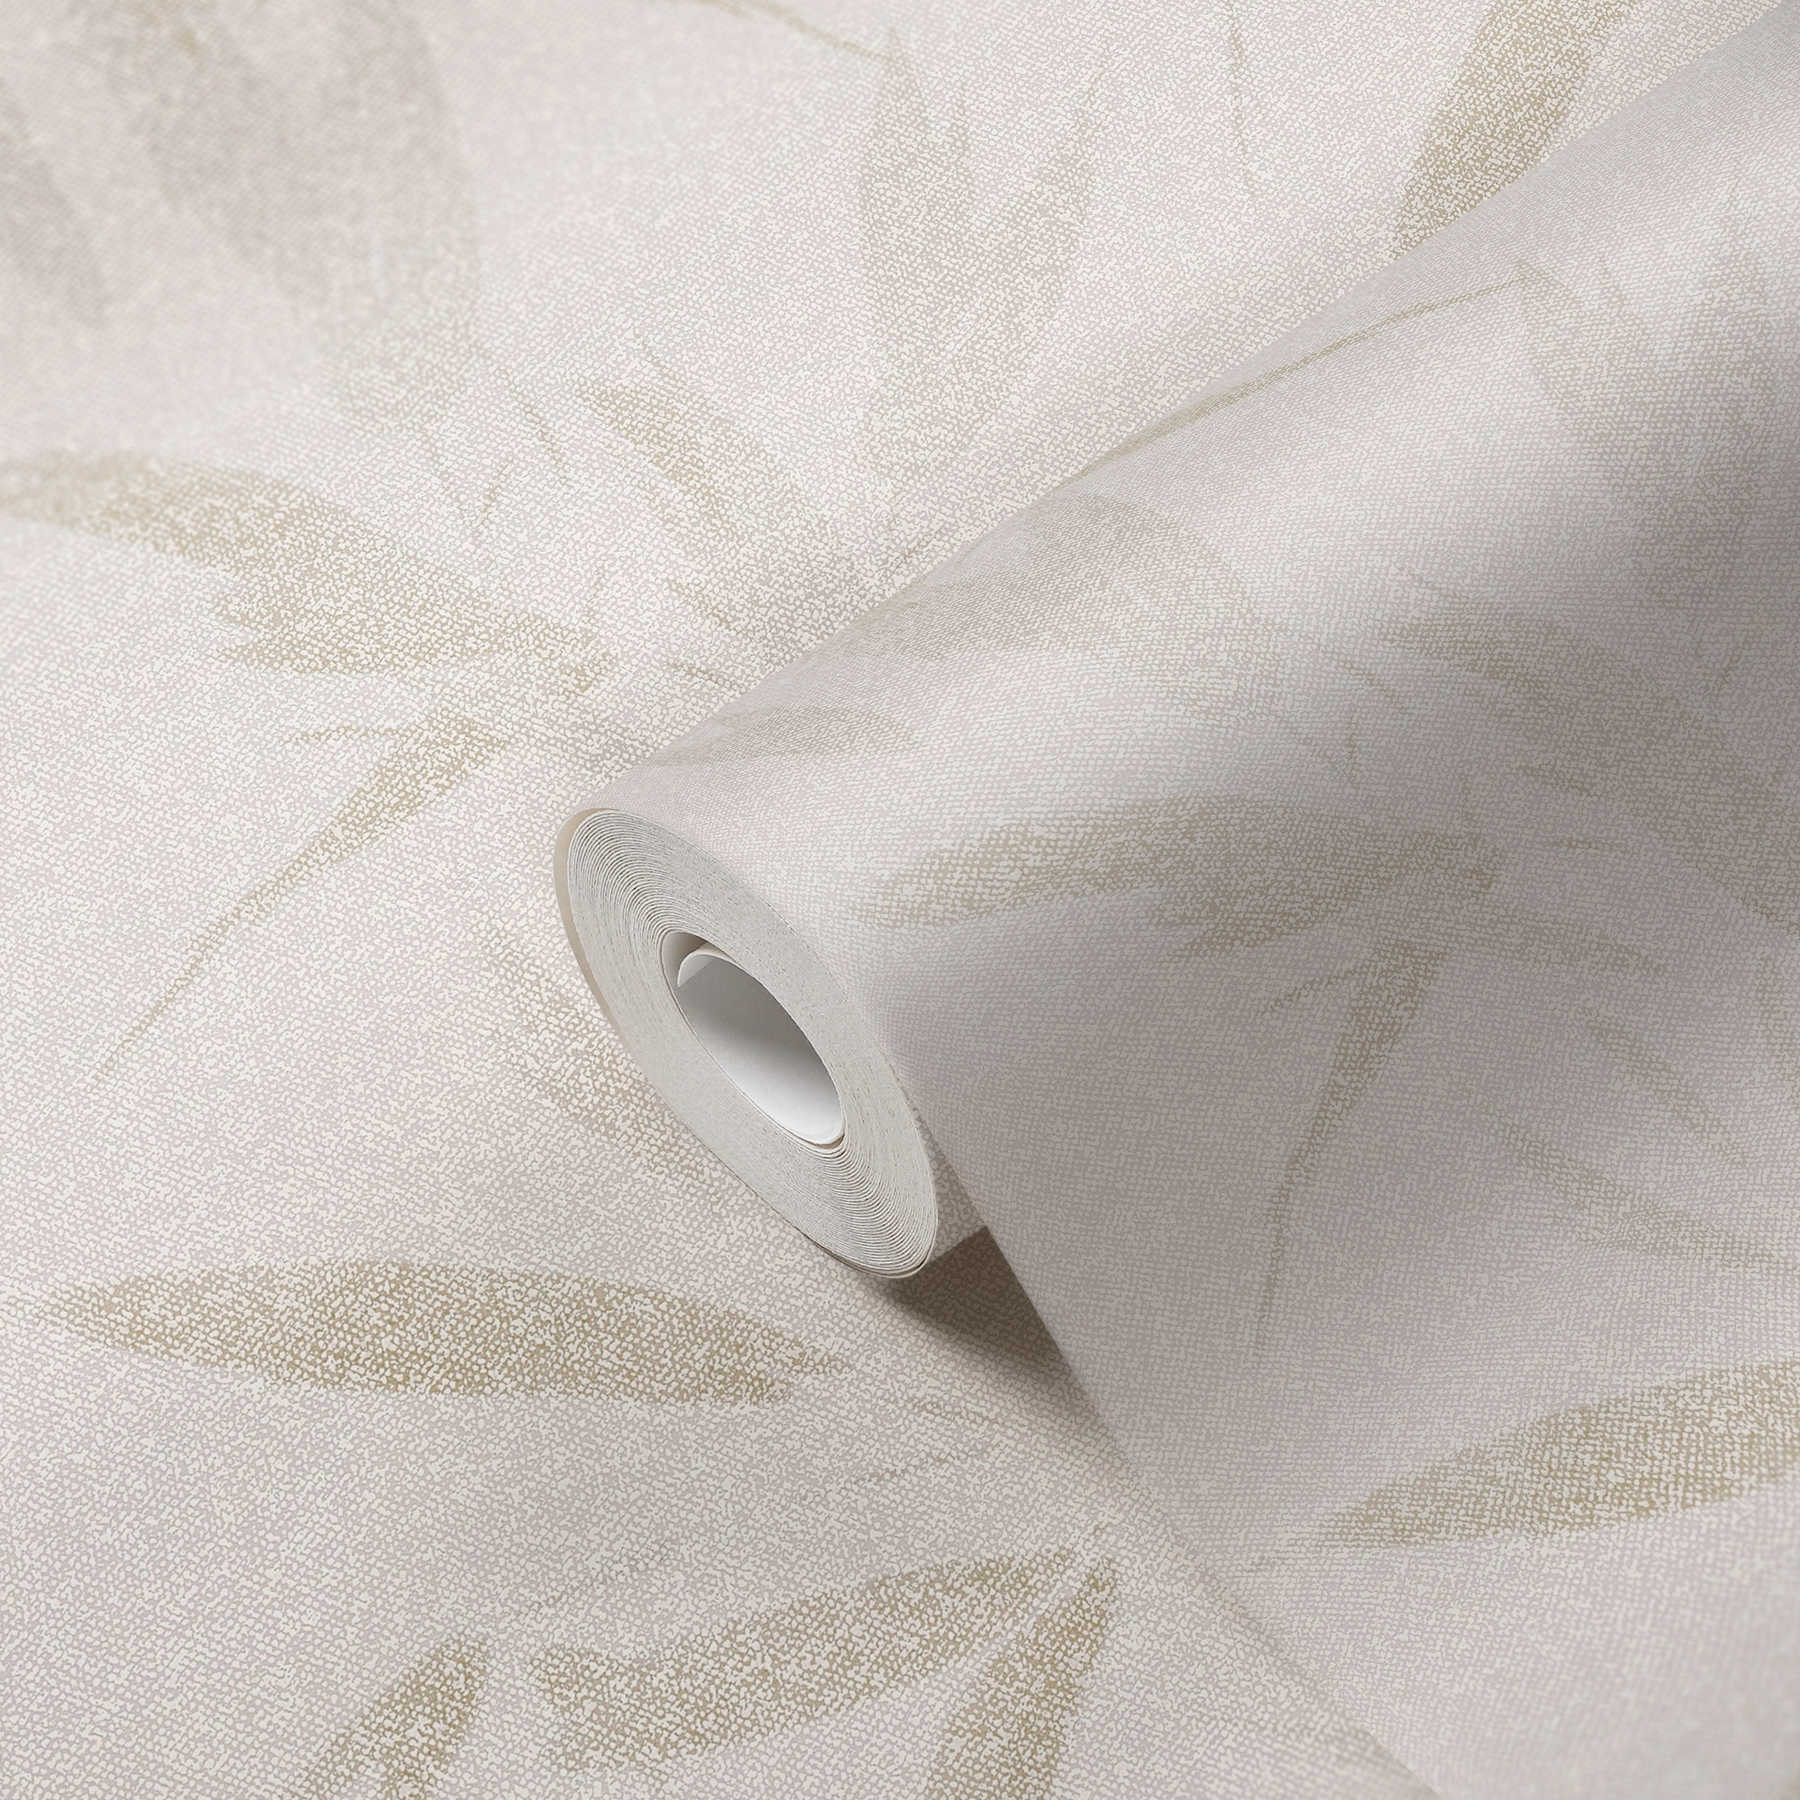             Papel pintado no tejido motivo hoja abstracto, aspecto textil - crema, beige
        